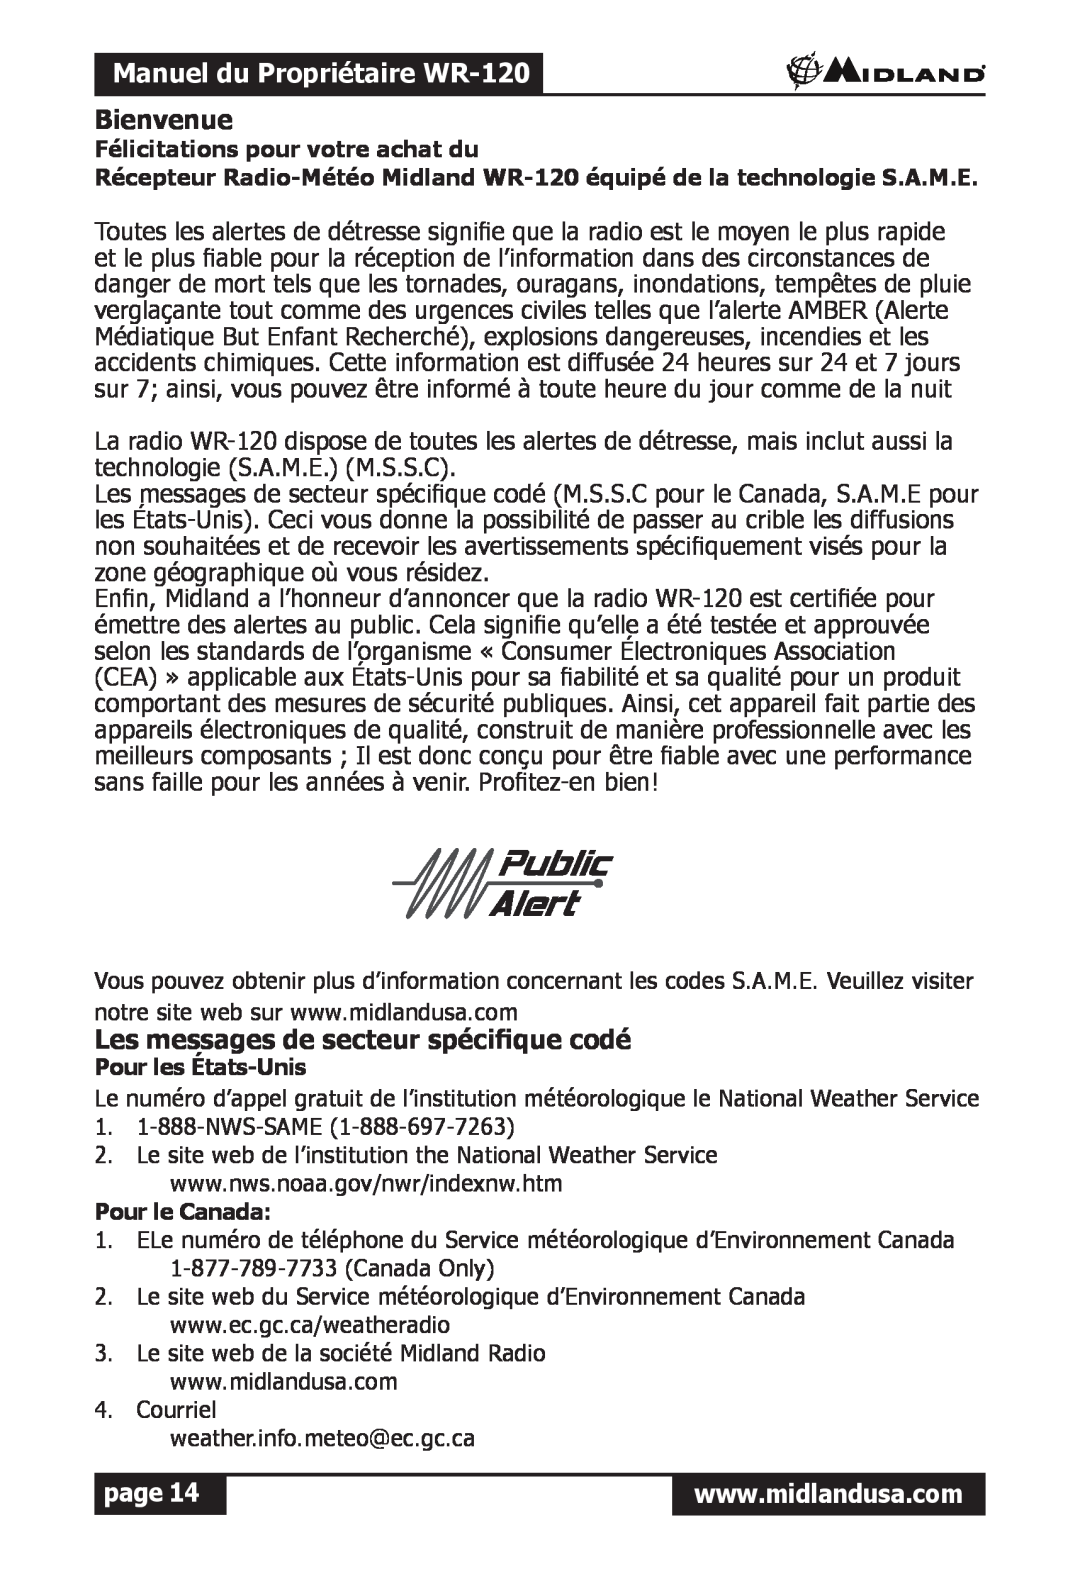 Midland Radio owner manual Manuel du Propriétaire WR-120, Bienvenue, Les messages de secteur spécifique codé, page 